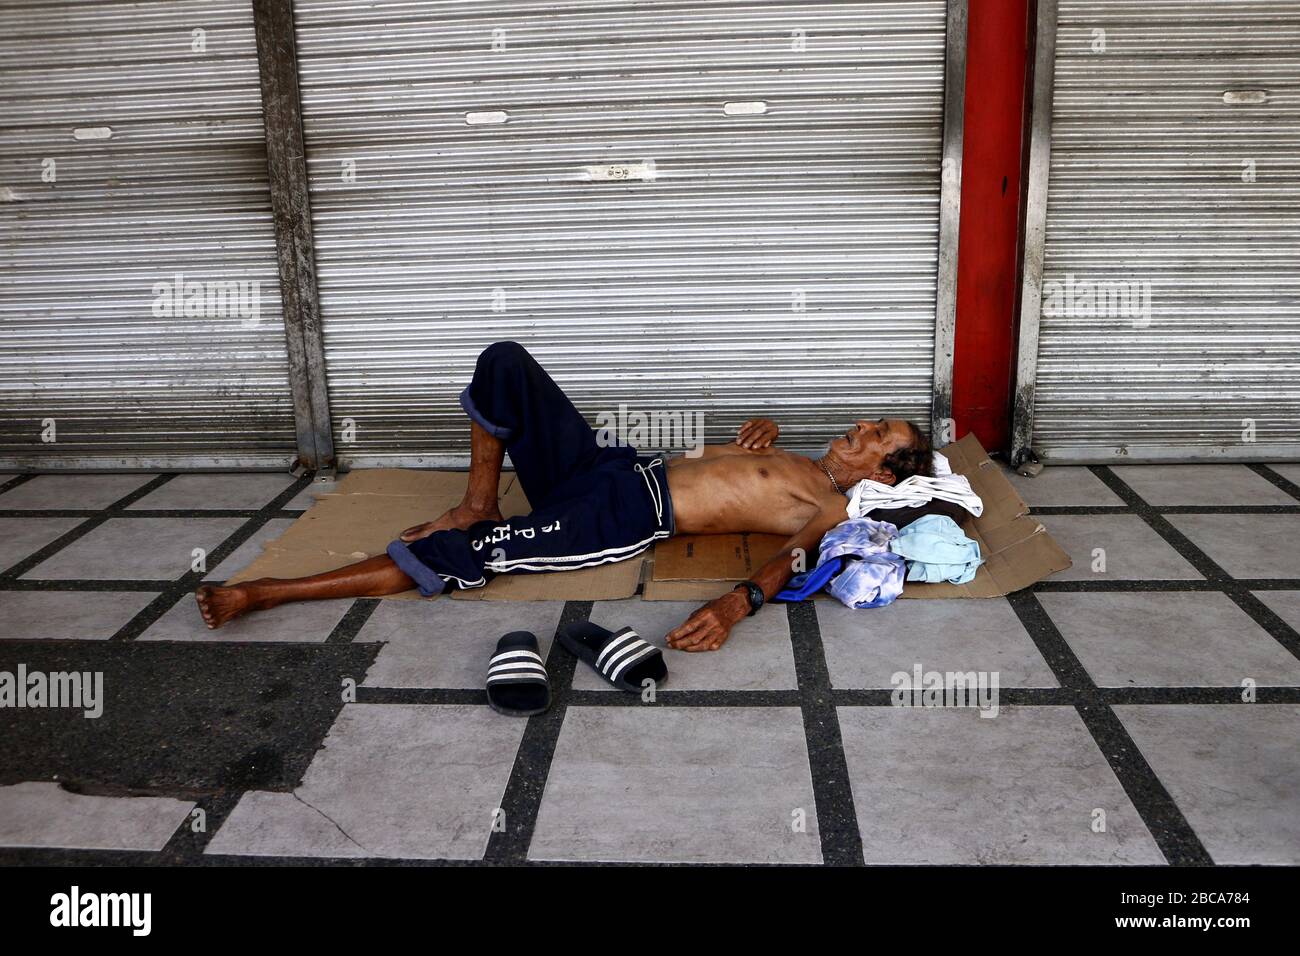 Antipolo City, Philippines - 2 avril 2020: Un homme sans abri philippin dort sur le sidwalk devant un magasin fermé pendant le verrouillage ou la communauté qu Banque D'Images